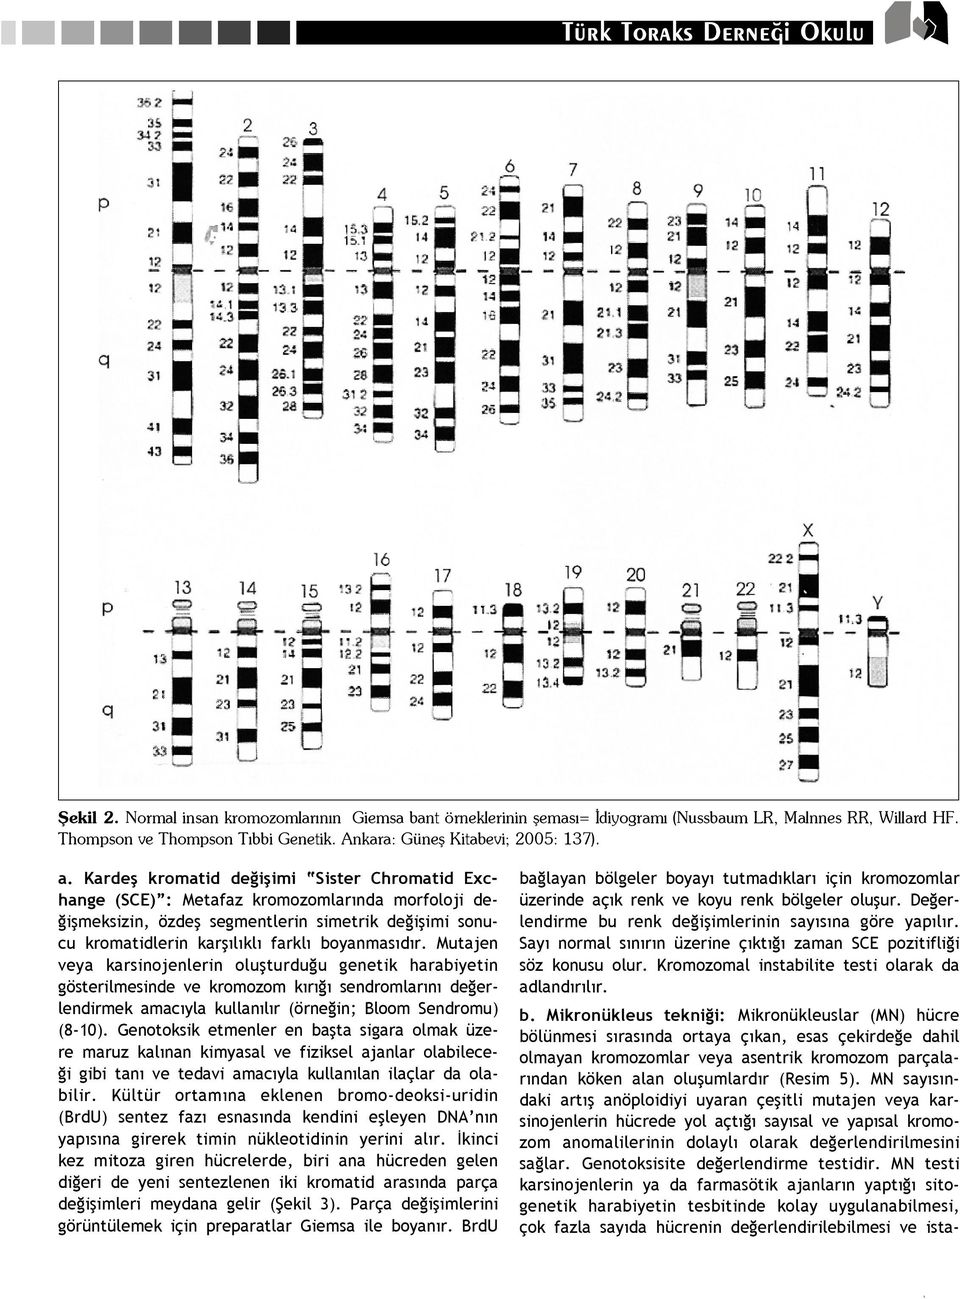 r. Mutajen veya karsinojenlerin oluflturdu u genetik harabiyetin gösterilmesinde ve kromozom k r sendromlar n de erlendirmek amac yla kullan l r (örne in; Bloom Sendromu) (8-10).